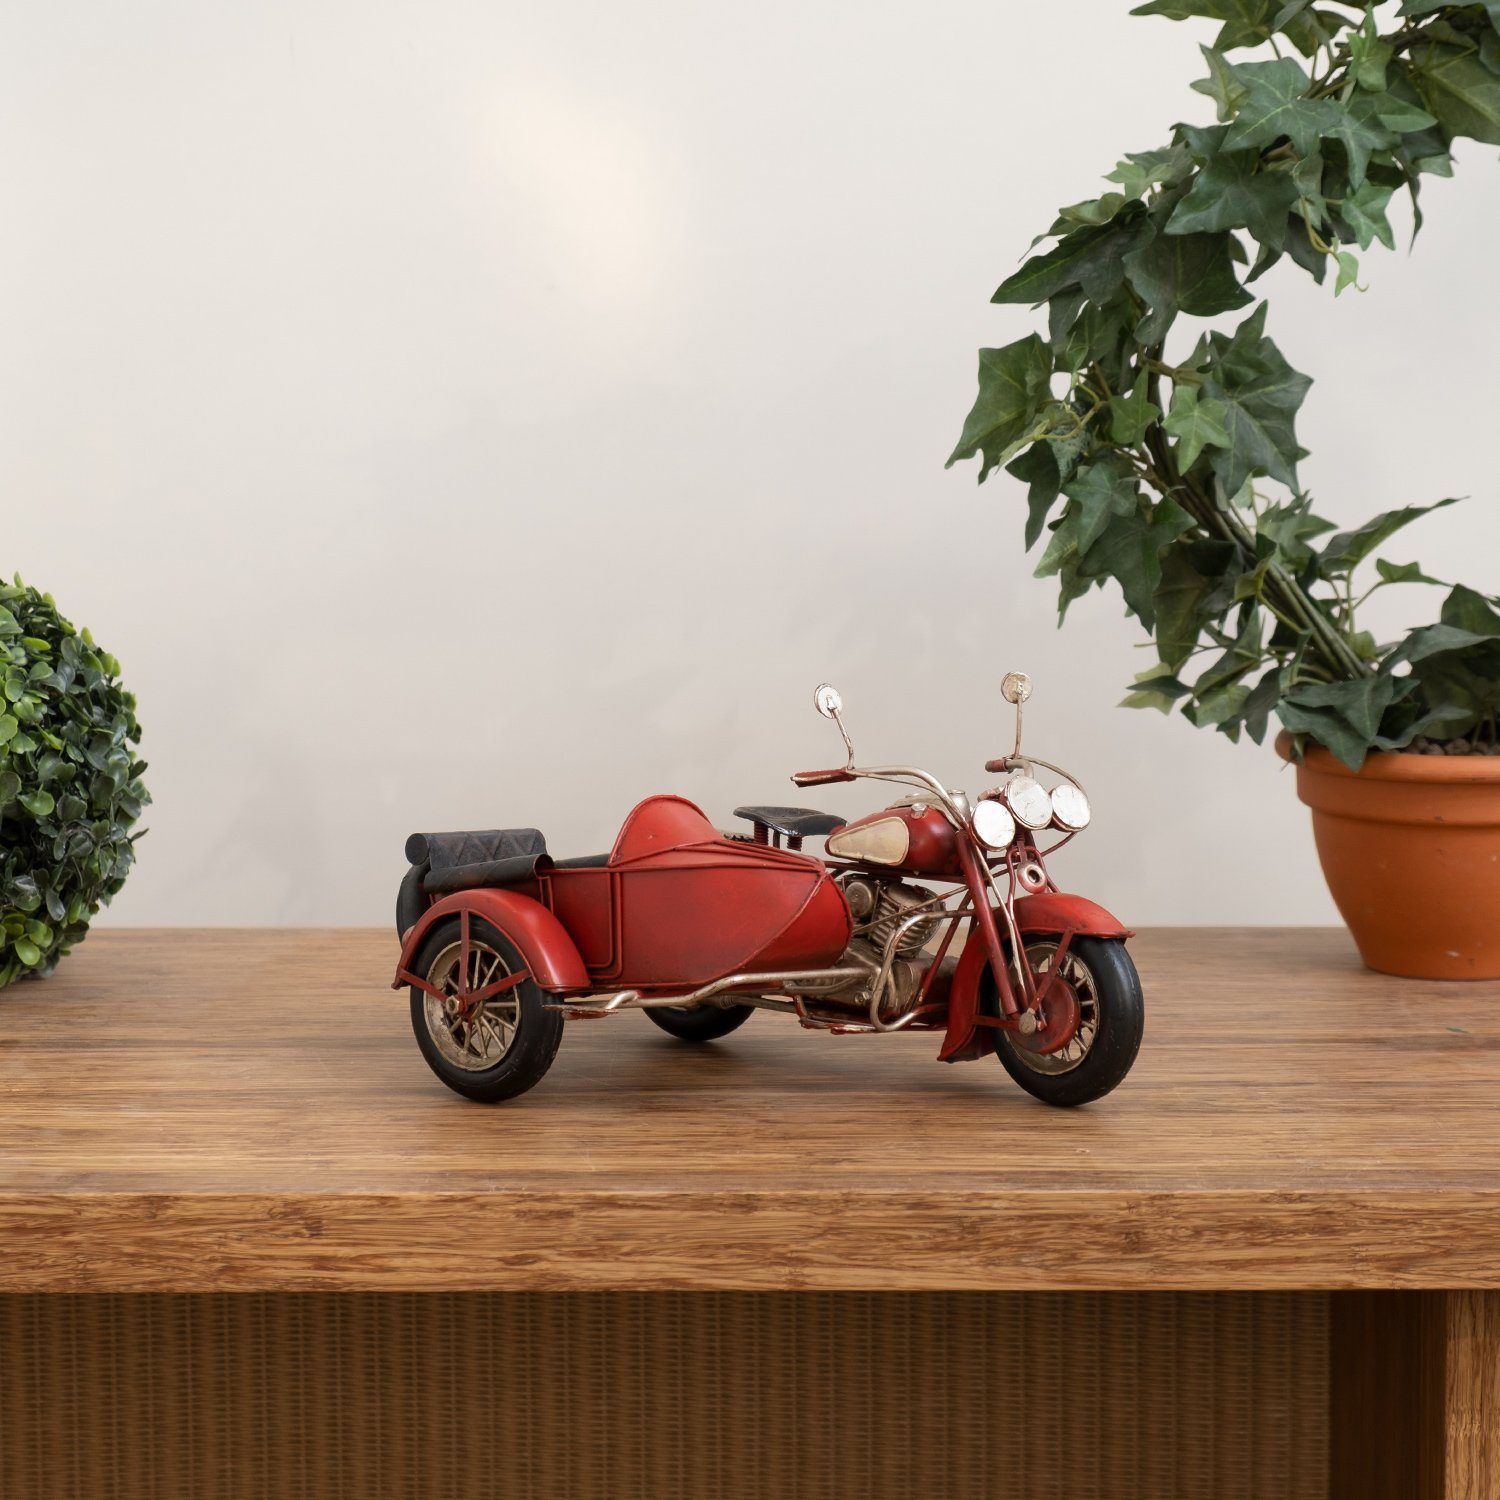 Moritz Dekoobjekt Blech-Deko Motorrad mit Beiwagen rot weiß, Modell  Nostalgie Antik-Stil Retro Blechmodell Miniatur Nachbildung